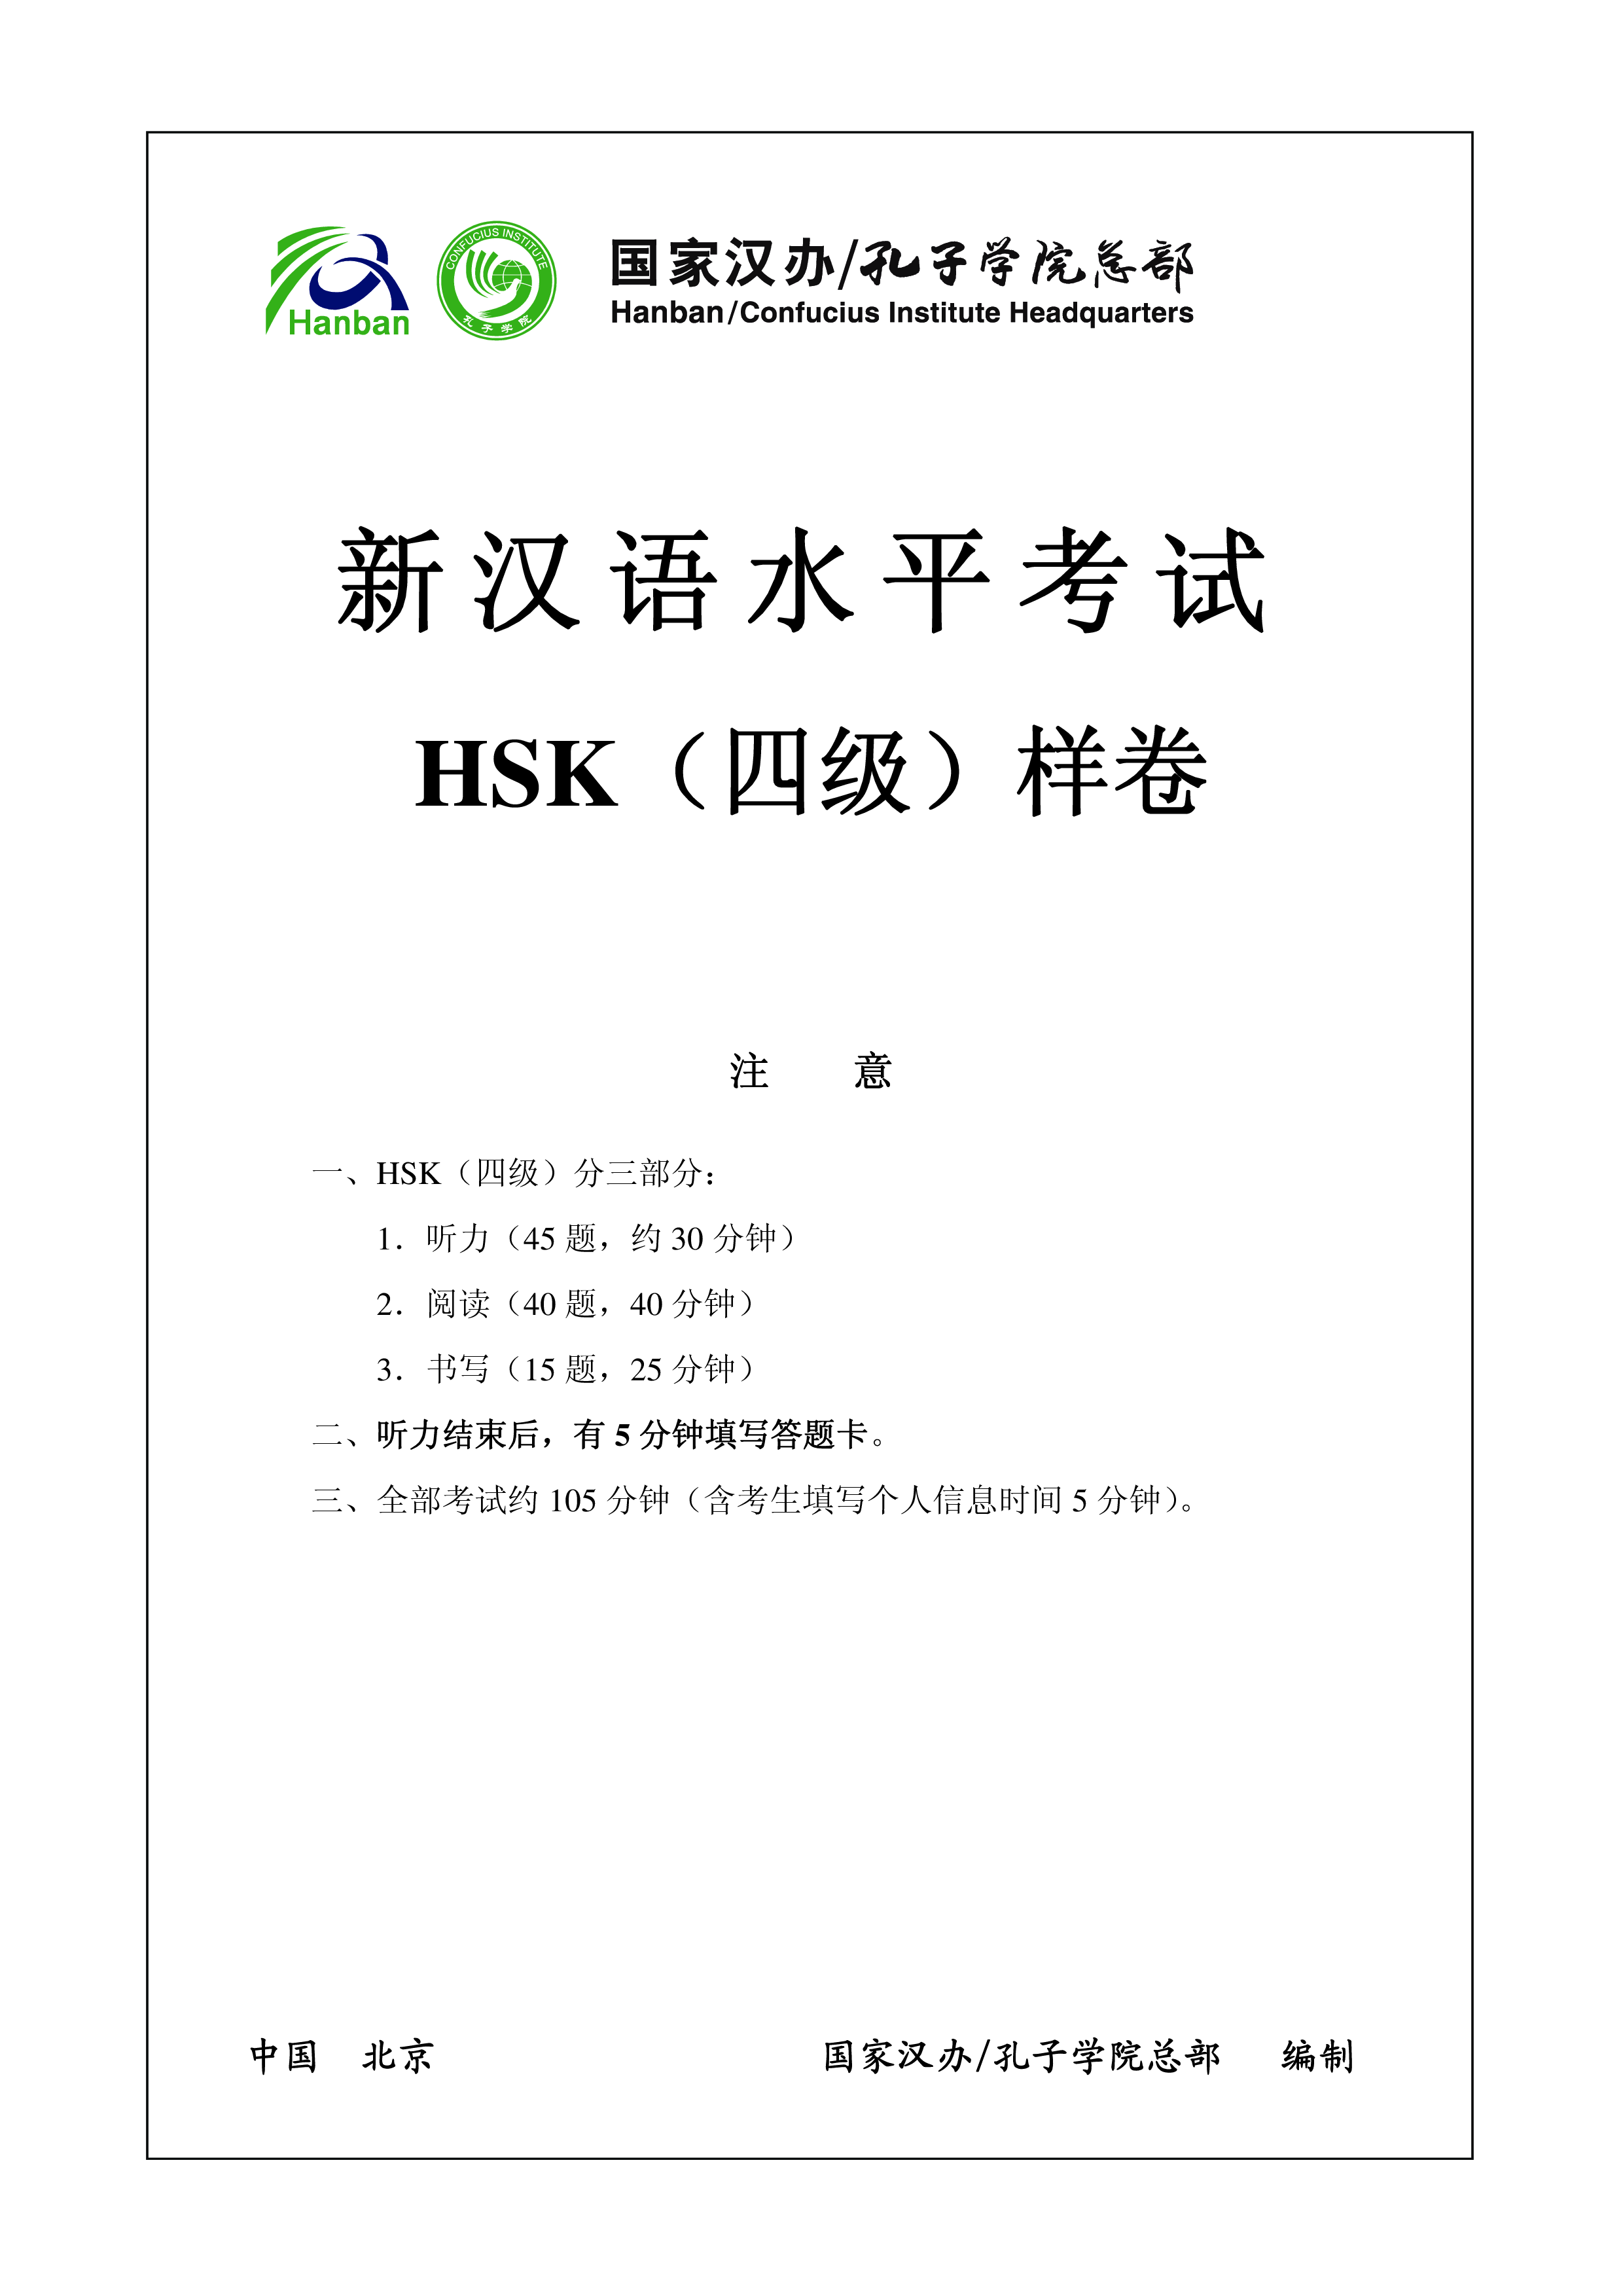 HSK4 Voorbeeld Examen H41000 main image